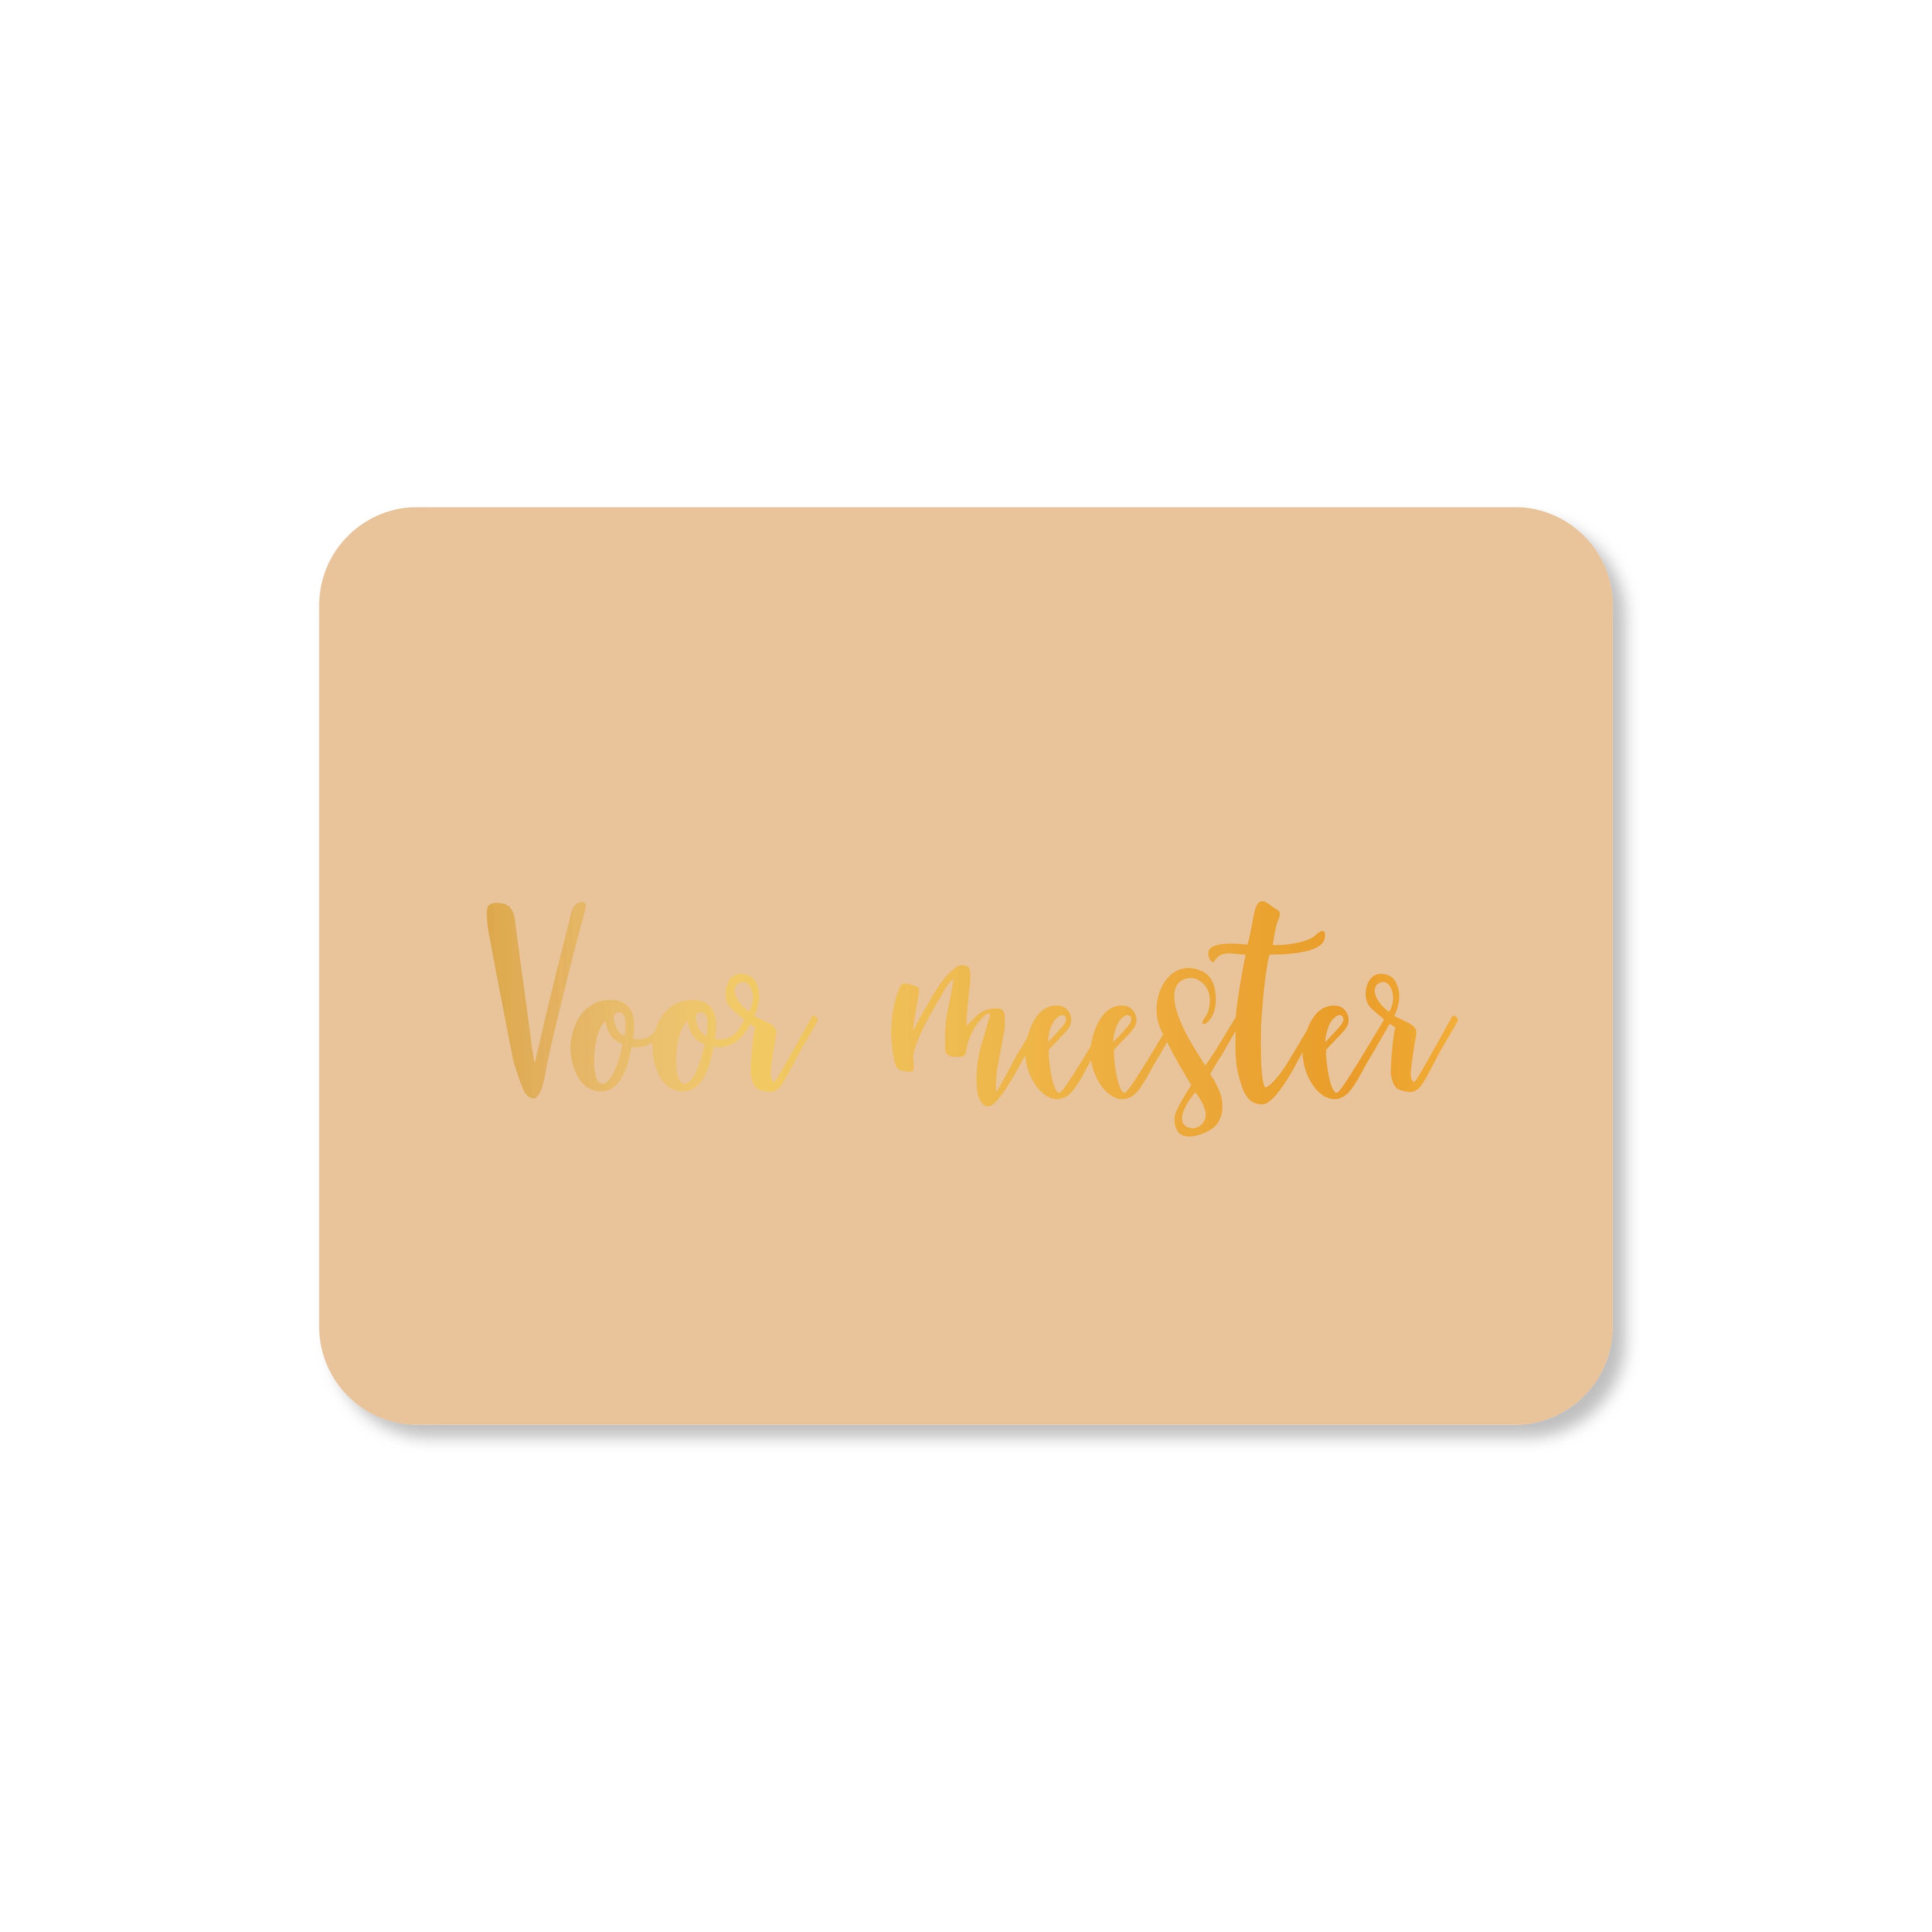 Minikaart Voor meester (met goudfolie)